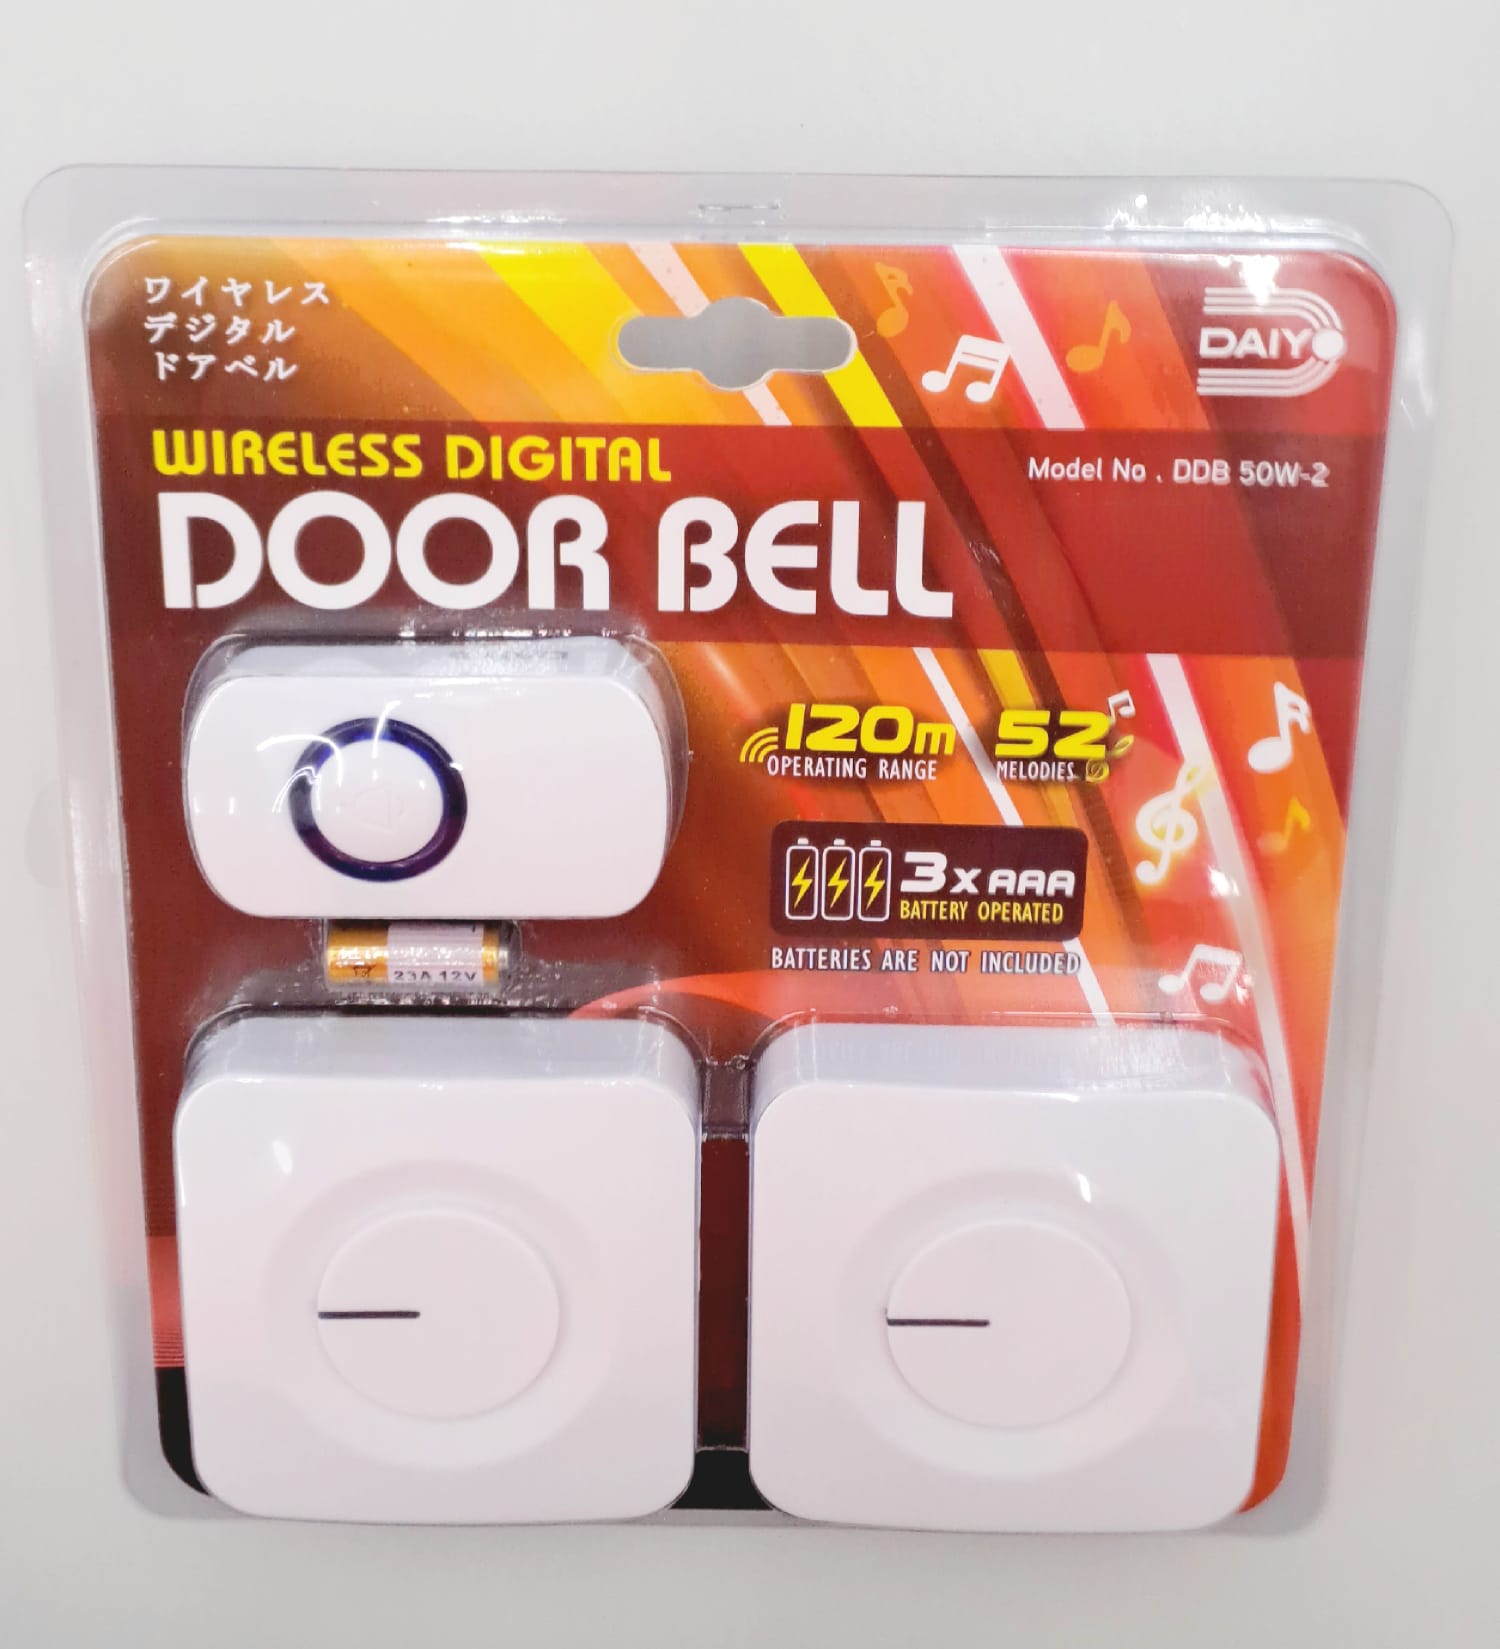 Daiyo Wireless Digital Dual Doorbell (2xDoorbells 1xSwitch)